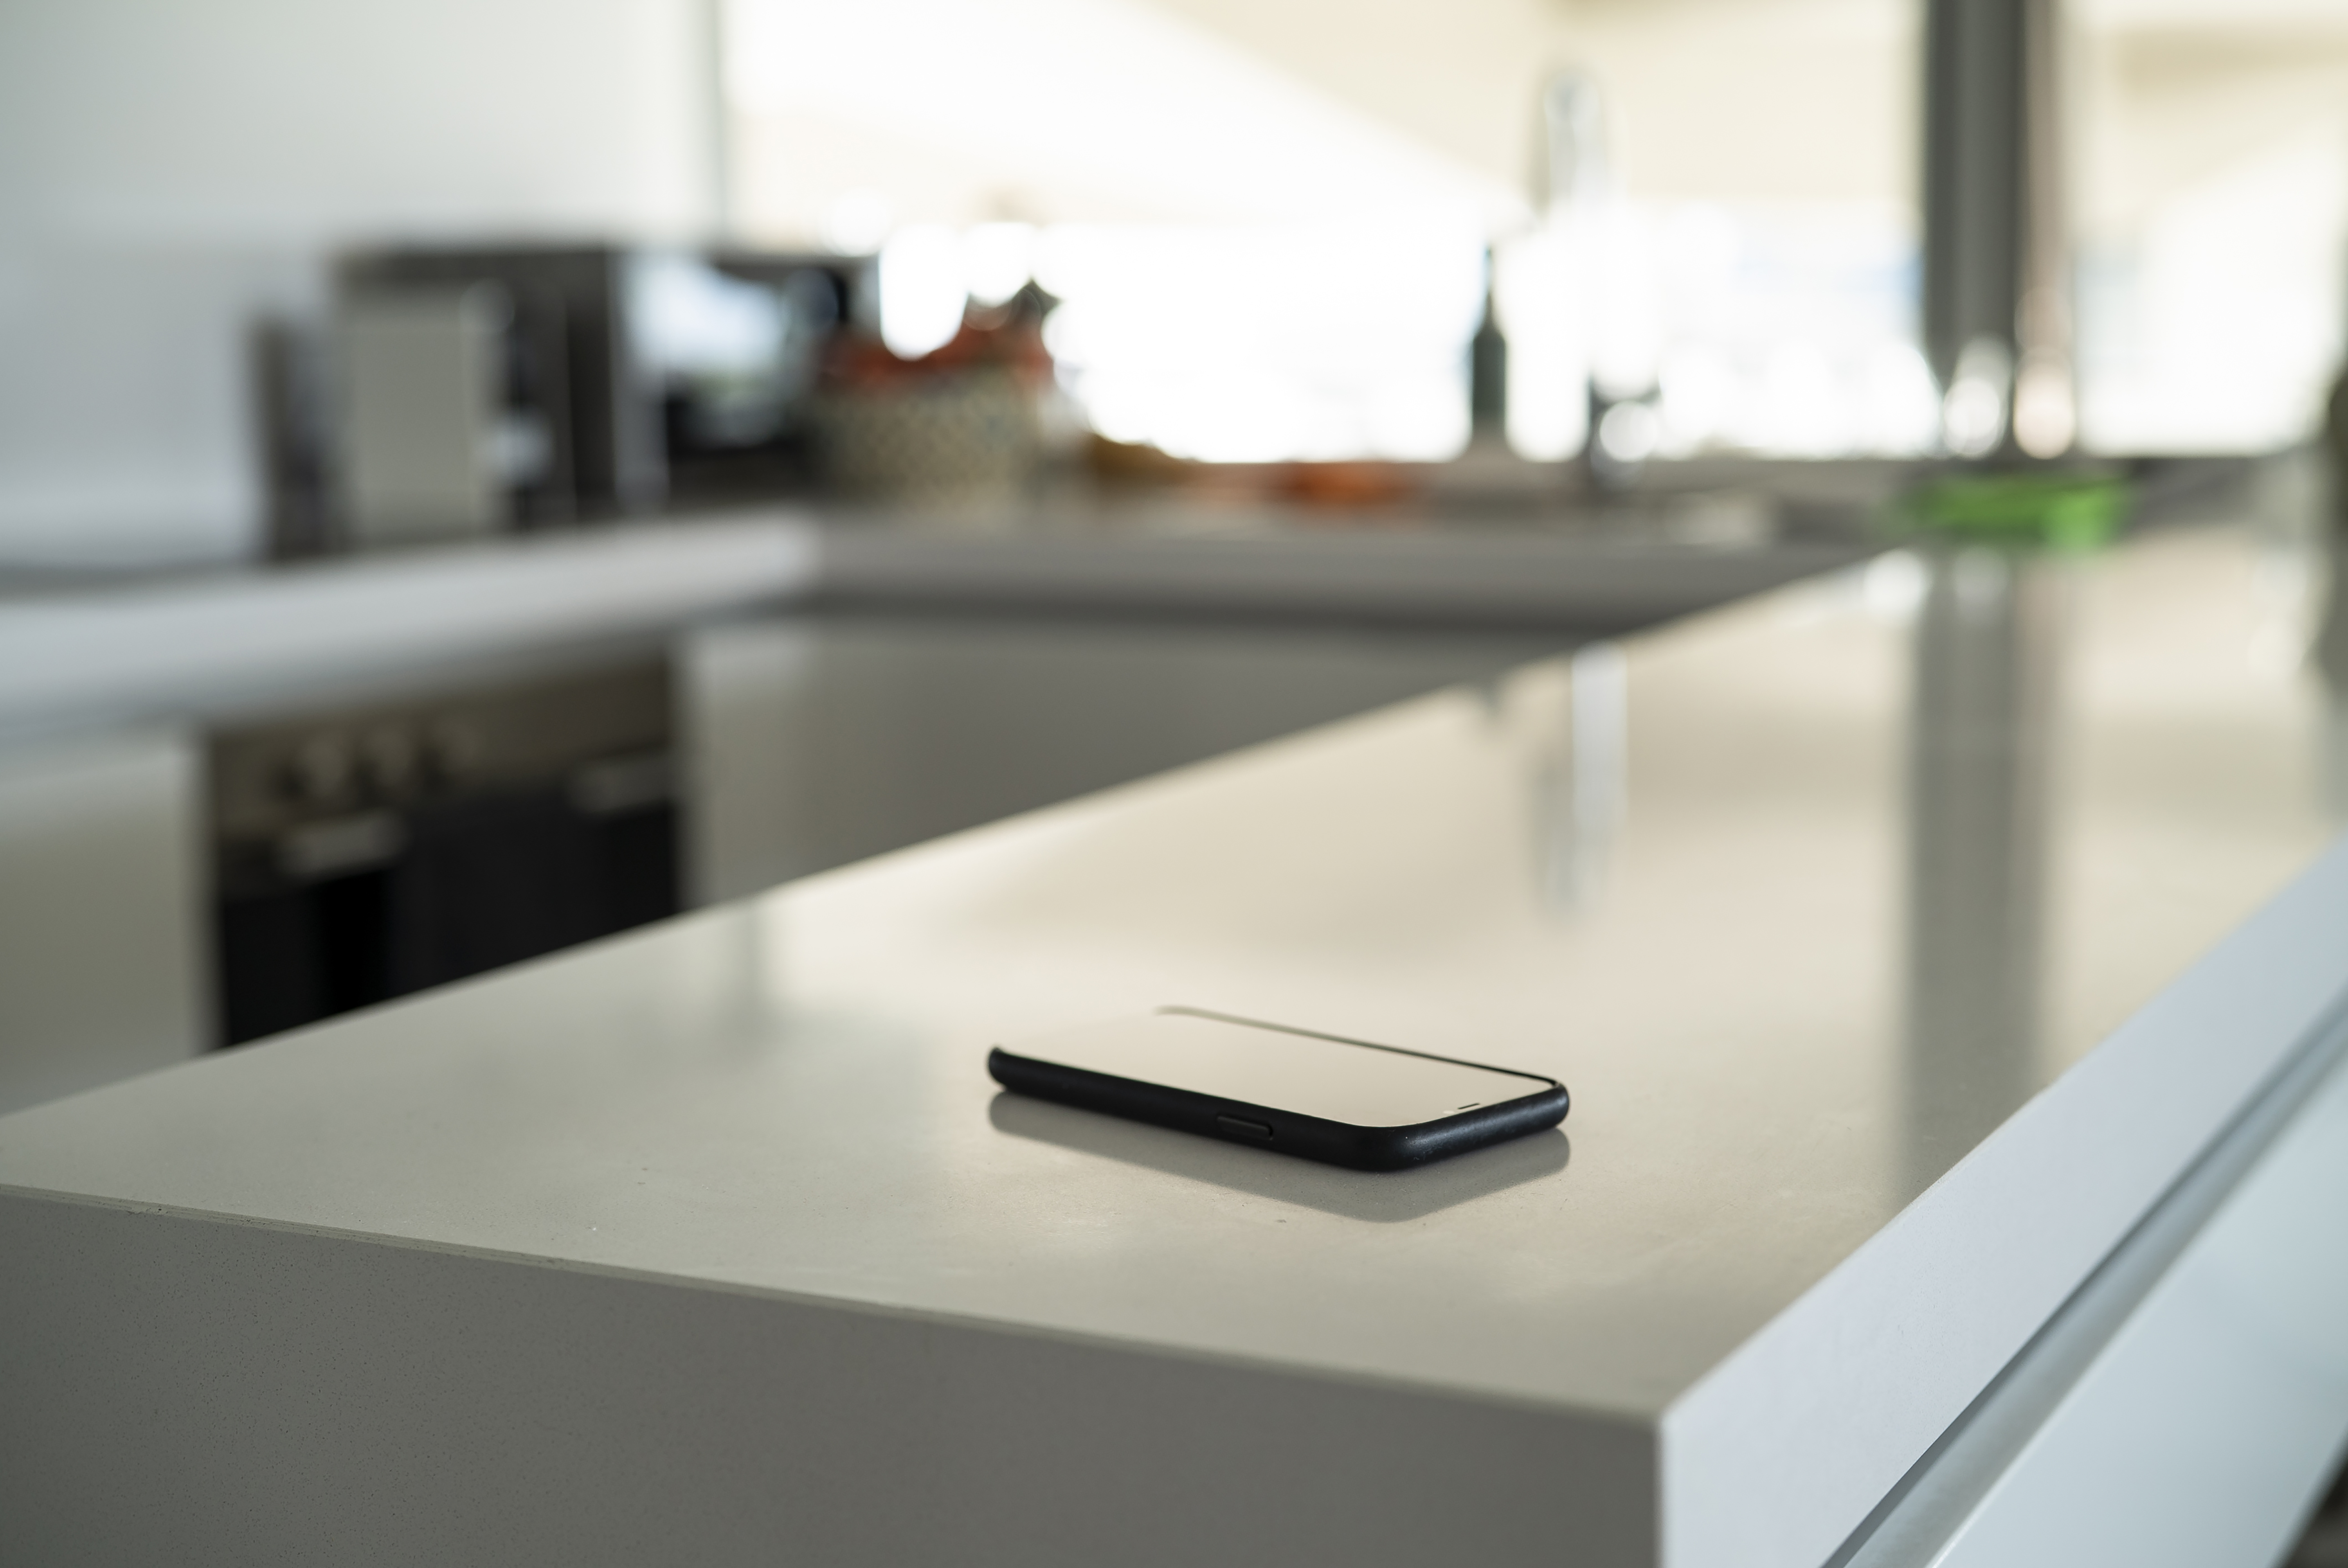 Ein Smartphone auf der Küchentheke | Quelle: Getty Images